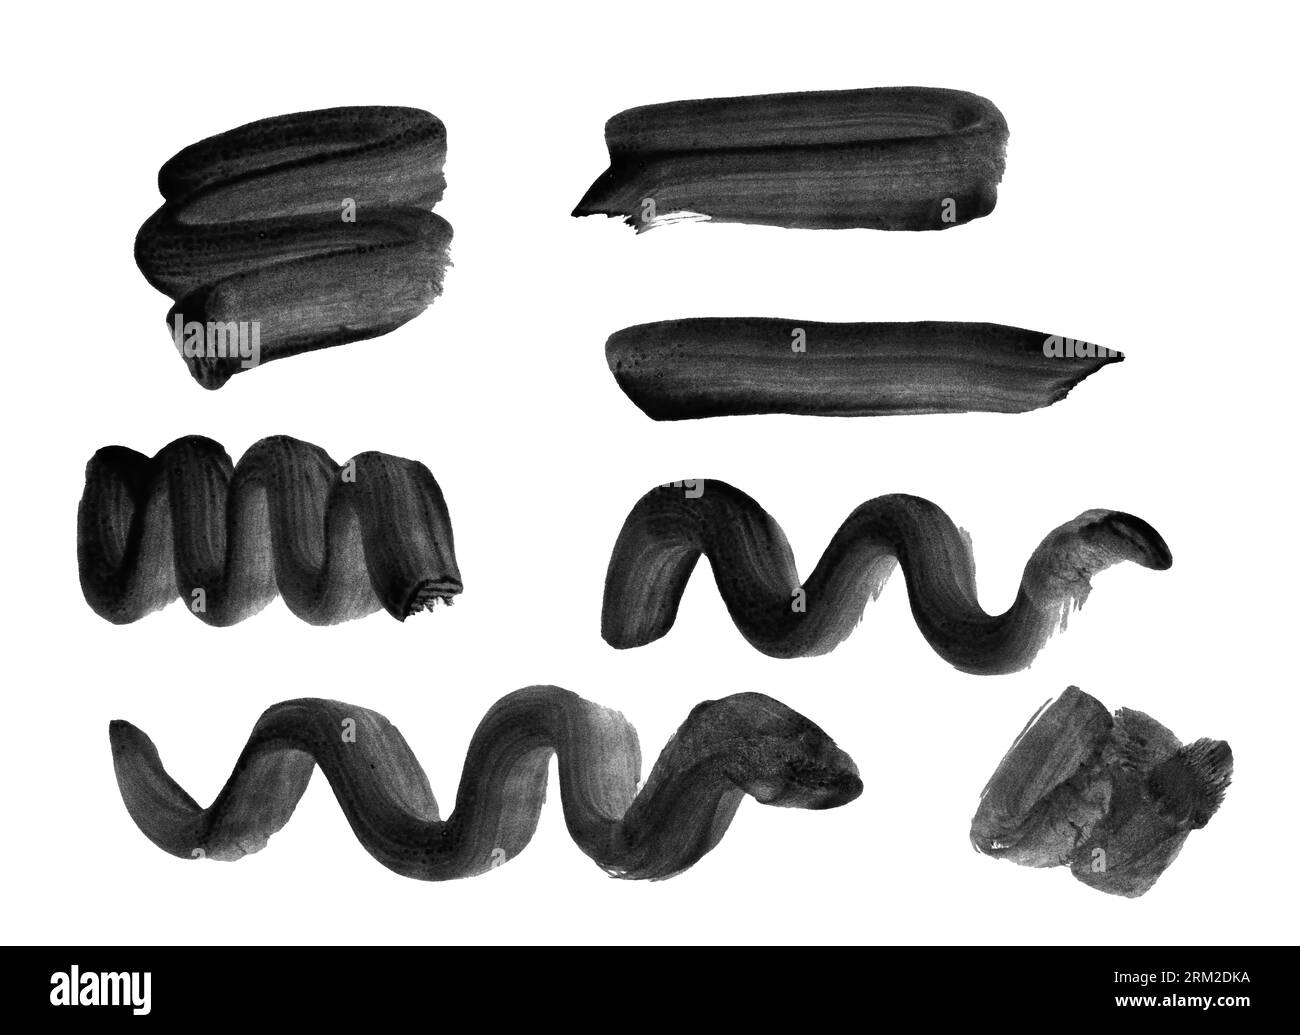 Raccolta di tratti di pennello gestuale con vernice nera, tratti fatti a mano di varie forme, cerchi, croci, allungati, quadrati, sha rettangolare Foto Stock